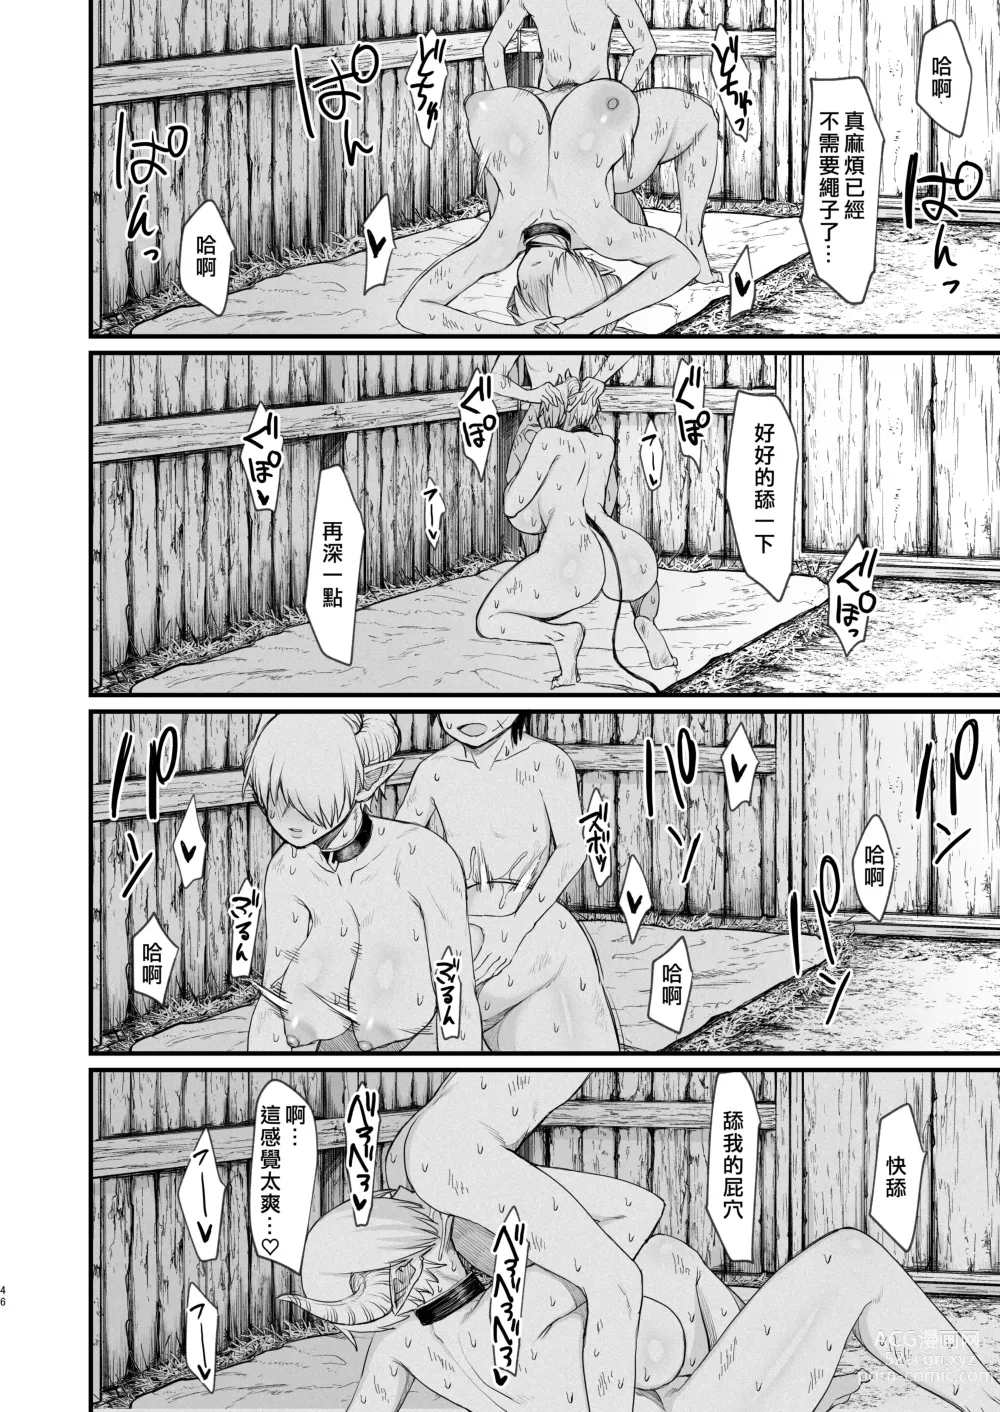 Page 46 of doujinshi Kachiku Inma